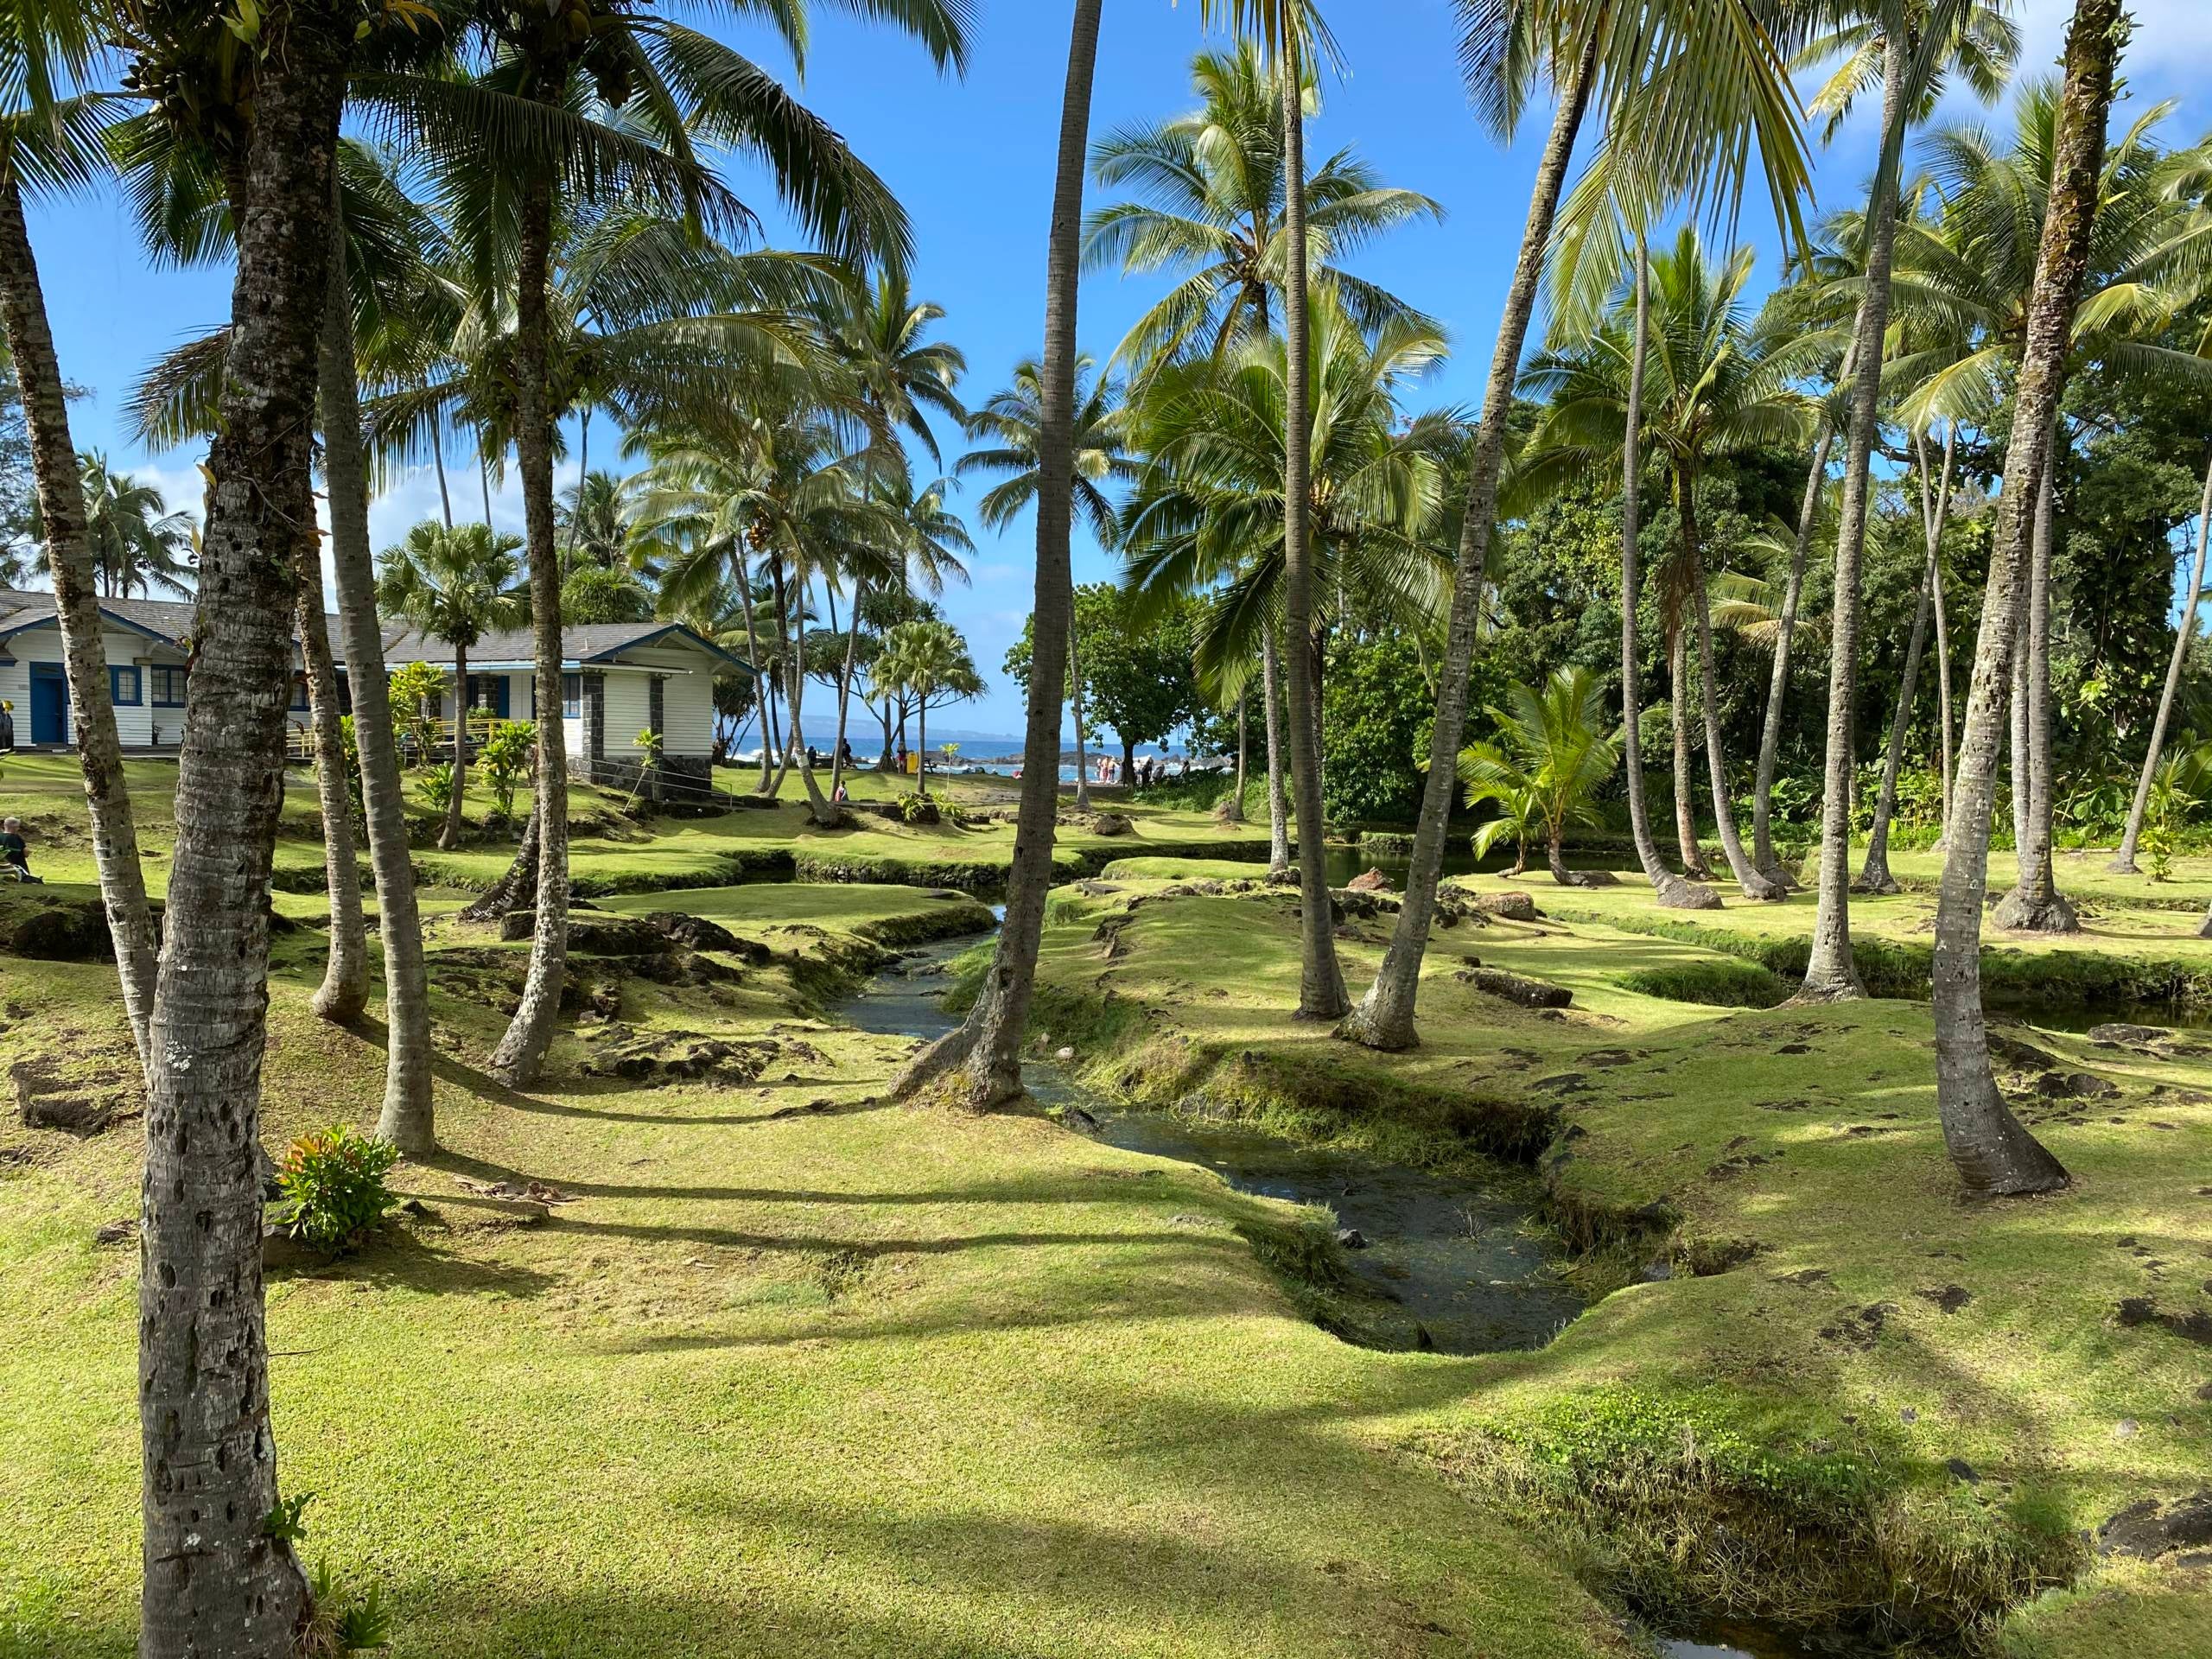 de palmbossen vormen een rustige toegang tot Richardson Beach Park in Hilo. (foto: 2DadsWithBaggage)